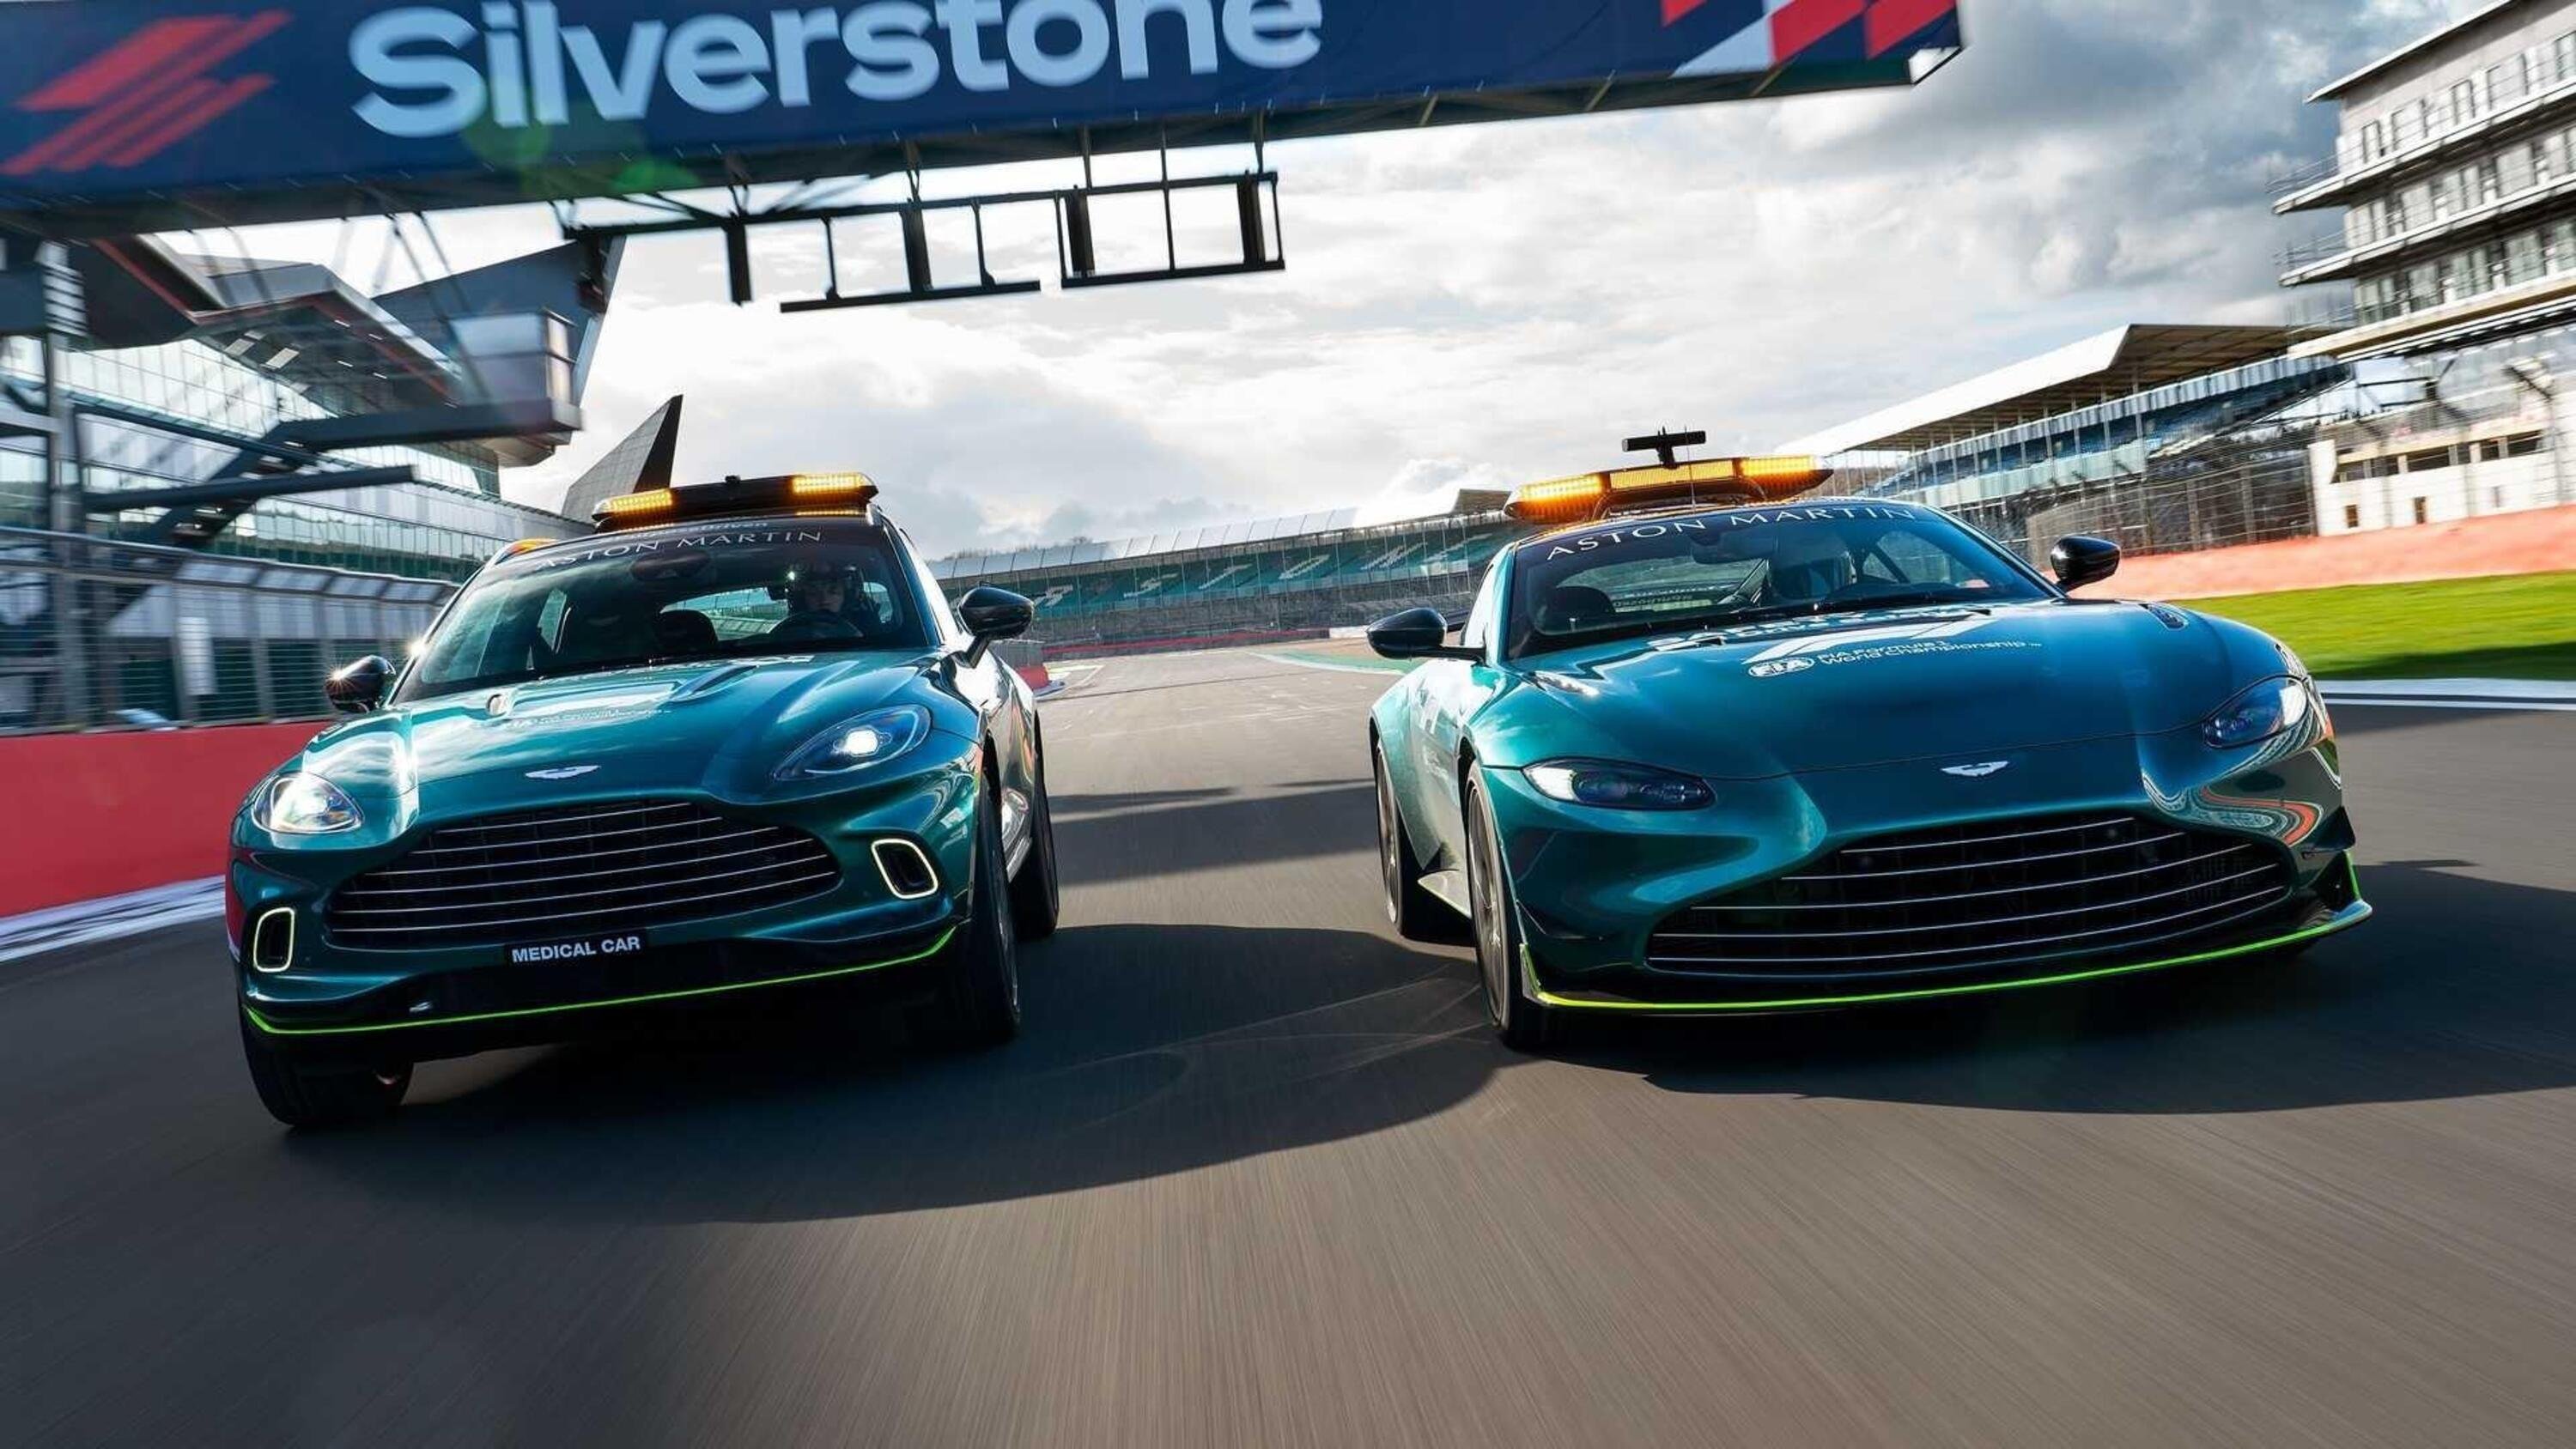 F1, Aston Martin Vantage &egrave; la Safety Car 2021 insieme alla Mercedes-AMG GT R. Che si tinge di rosso